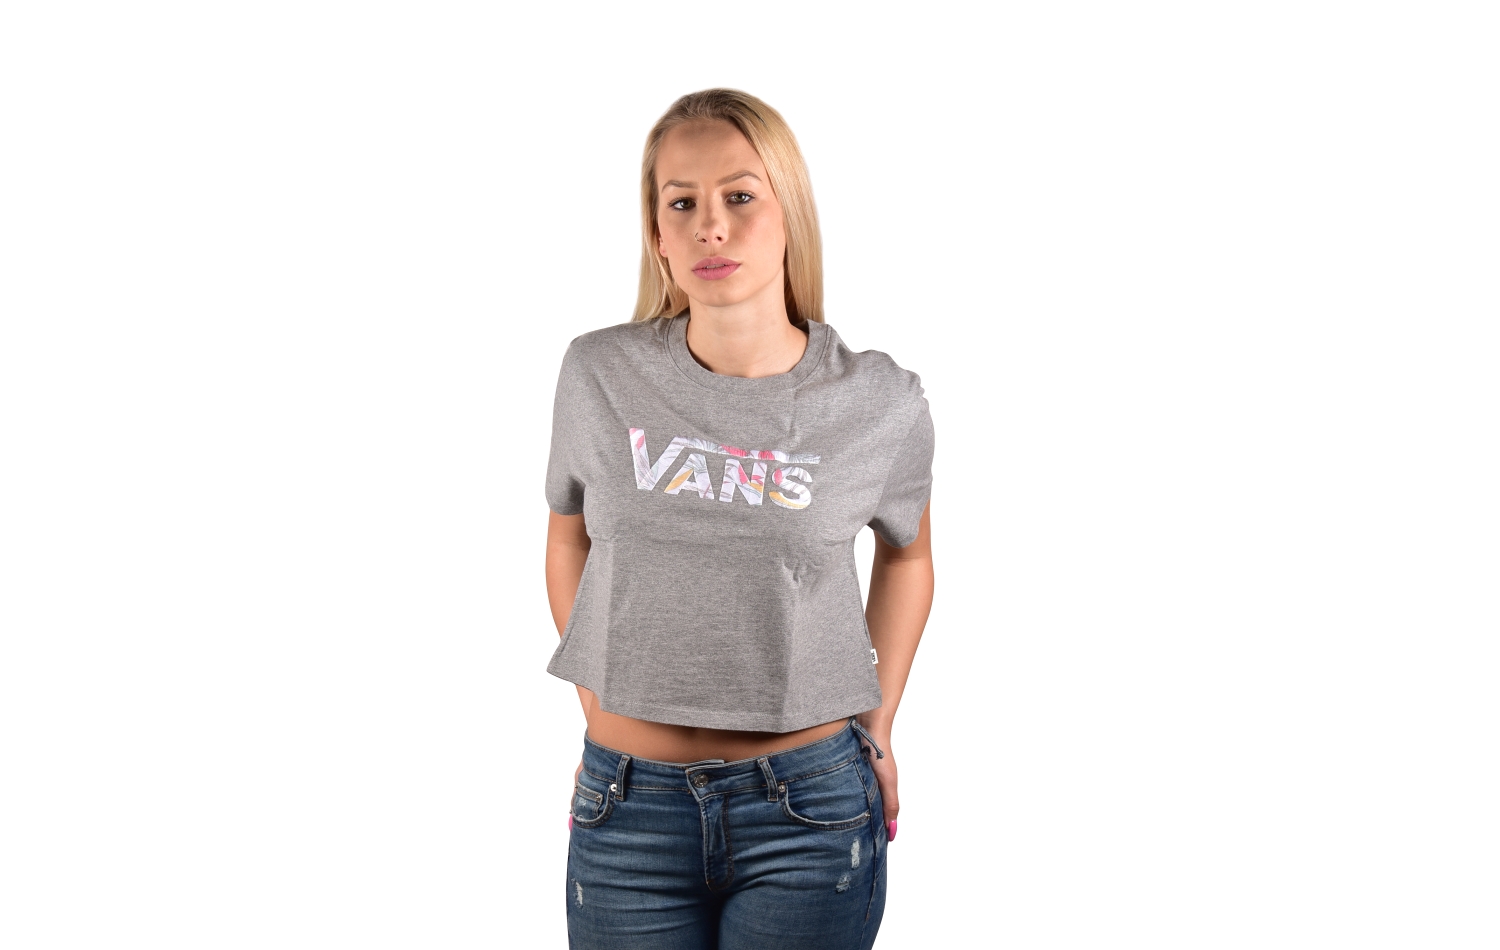 Vans Wmns Cali Floral Box Top S/S (VA3ISAGRH)